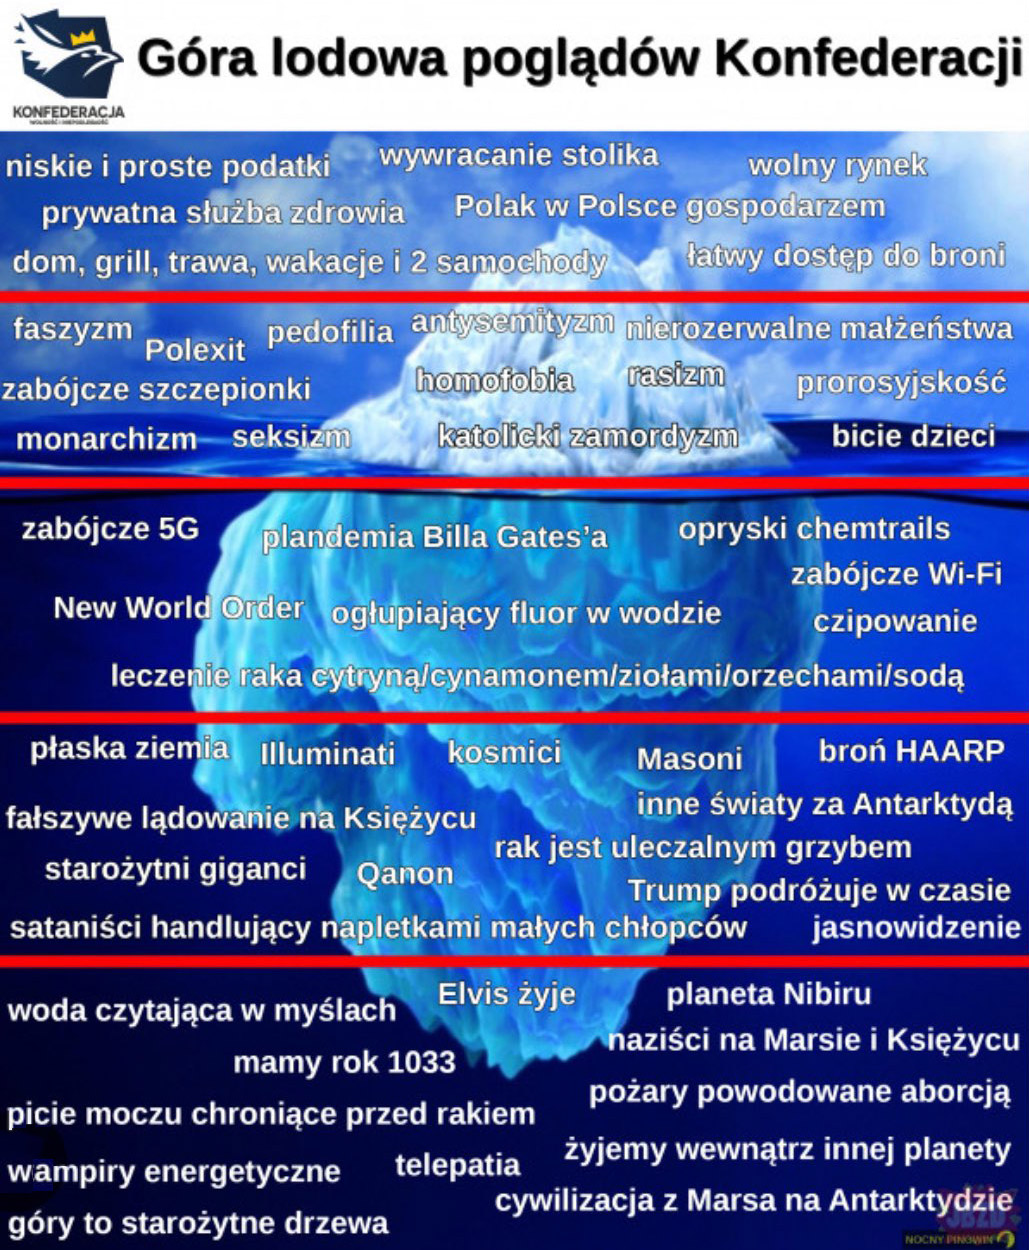 Góra lodowa konfederacji szurskie poglądy pełna lista